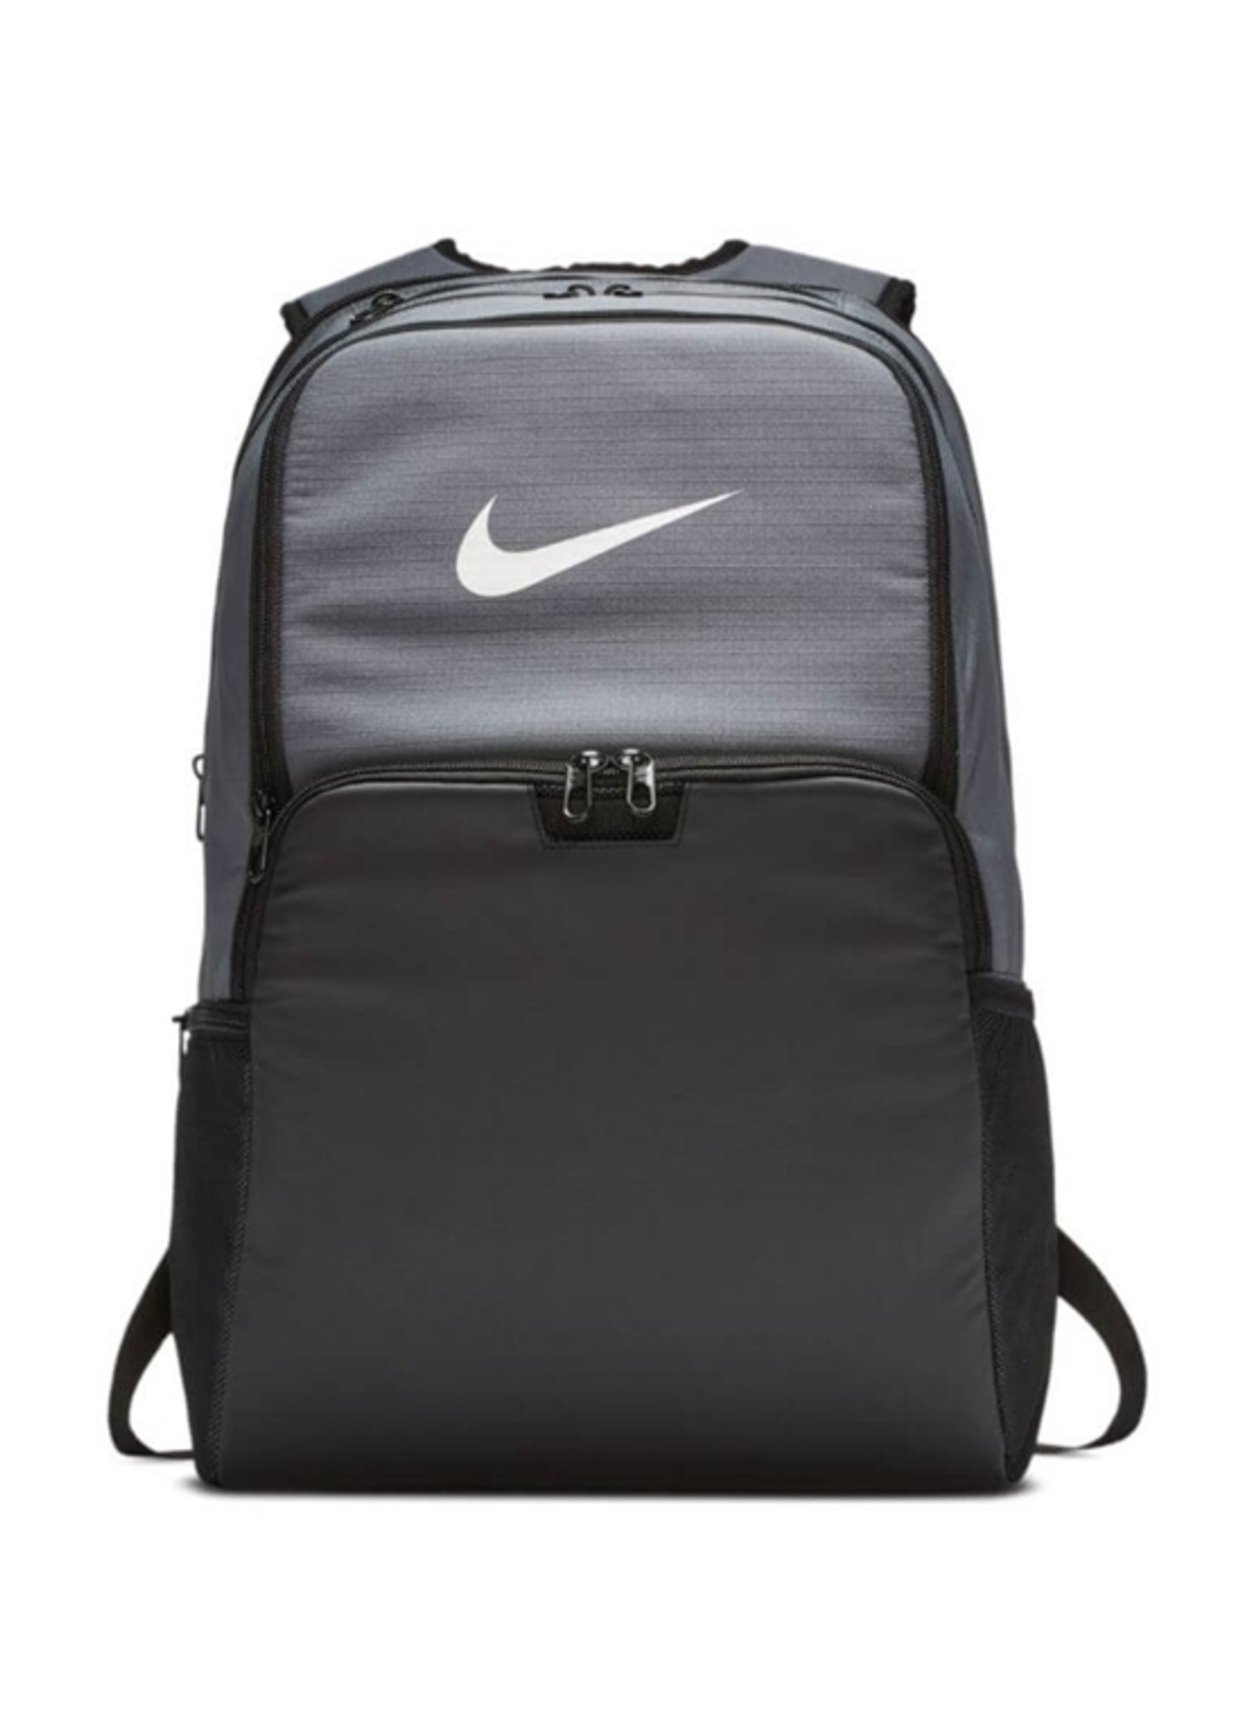 Nike Brasilia Extra Large Training Backpack Flint Grey